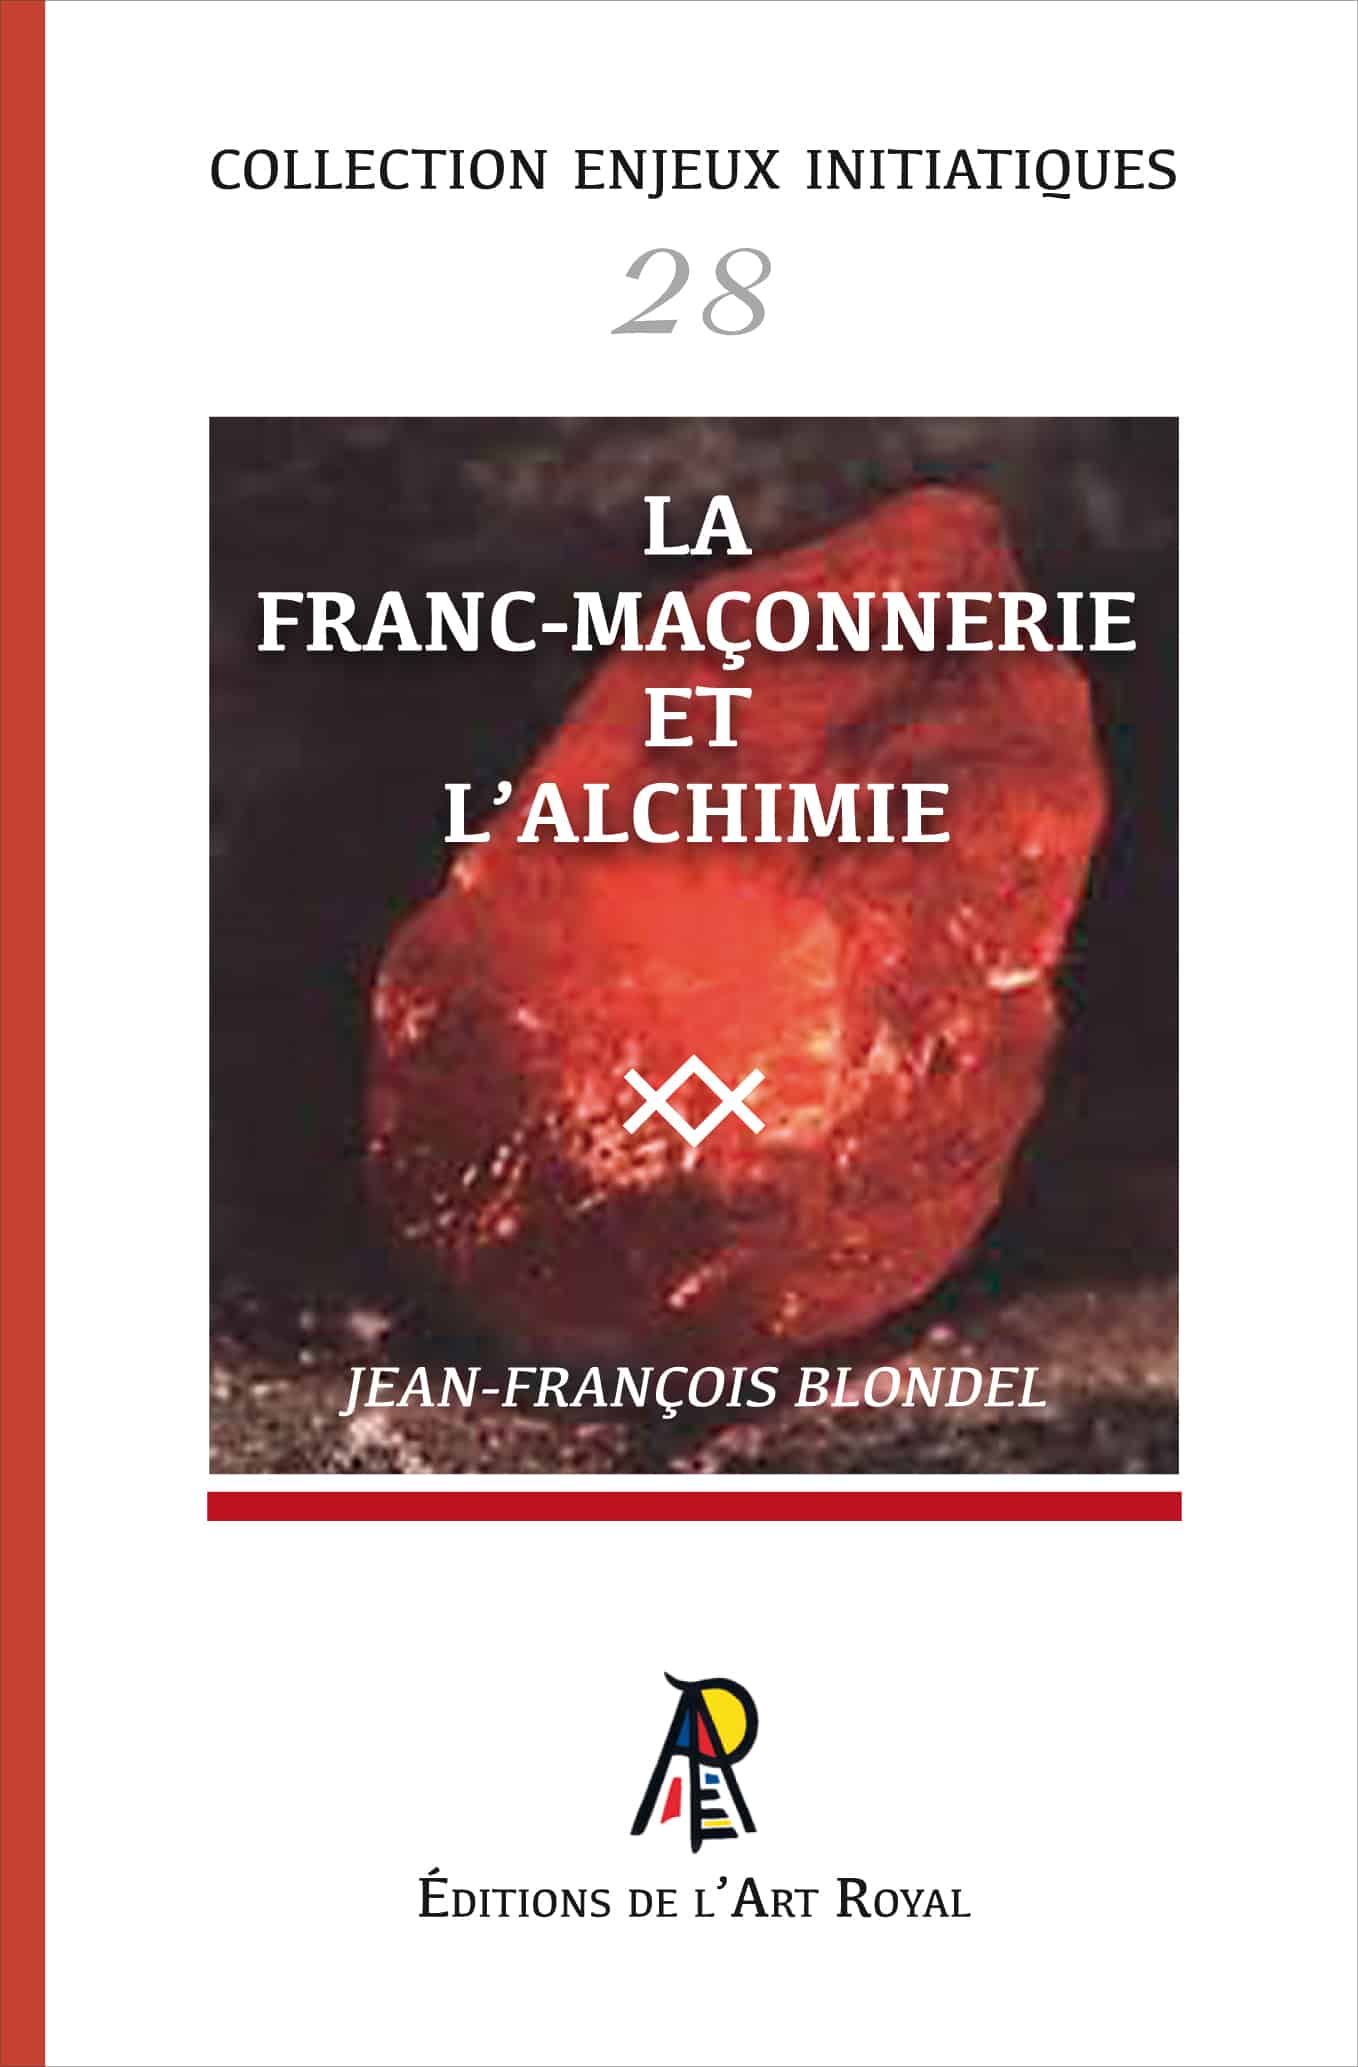 La franc-maçonnerie et l'alchimie, Jean-François Blondel